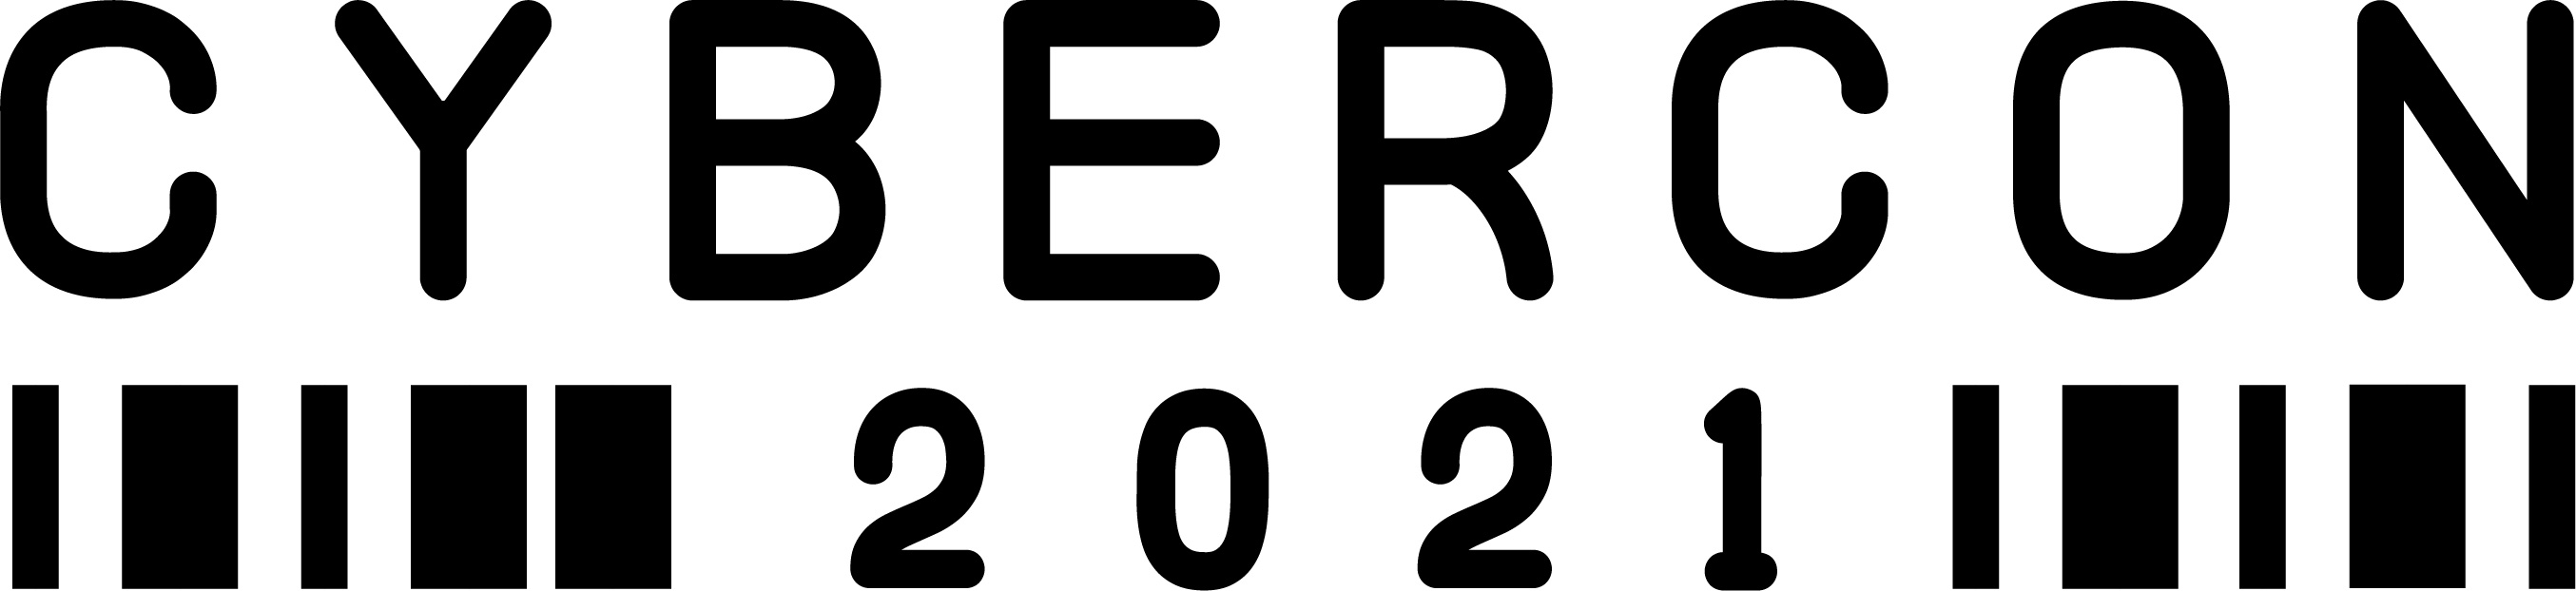 cybercon logo 2021